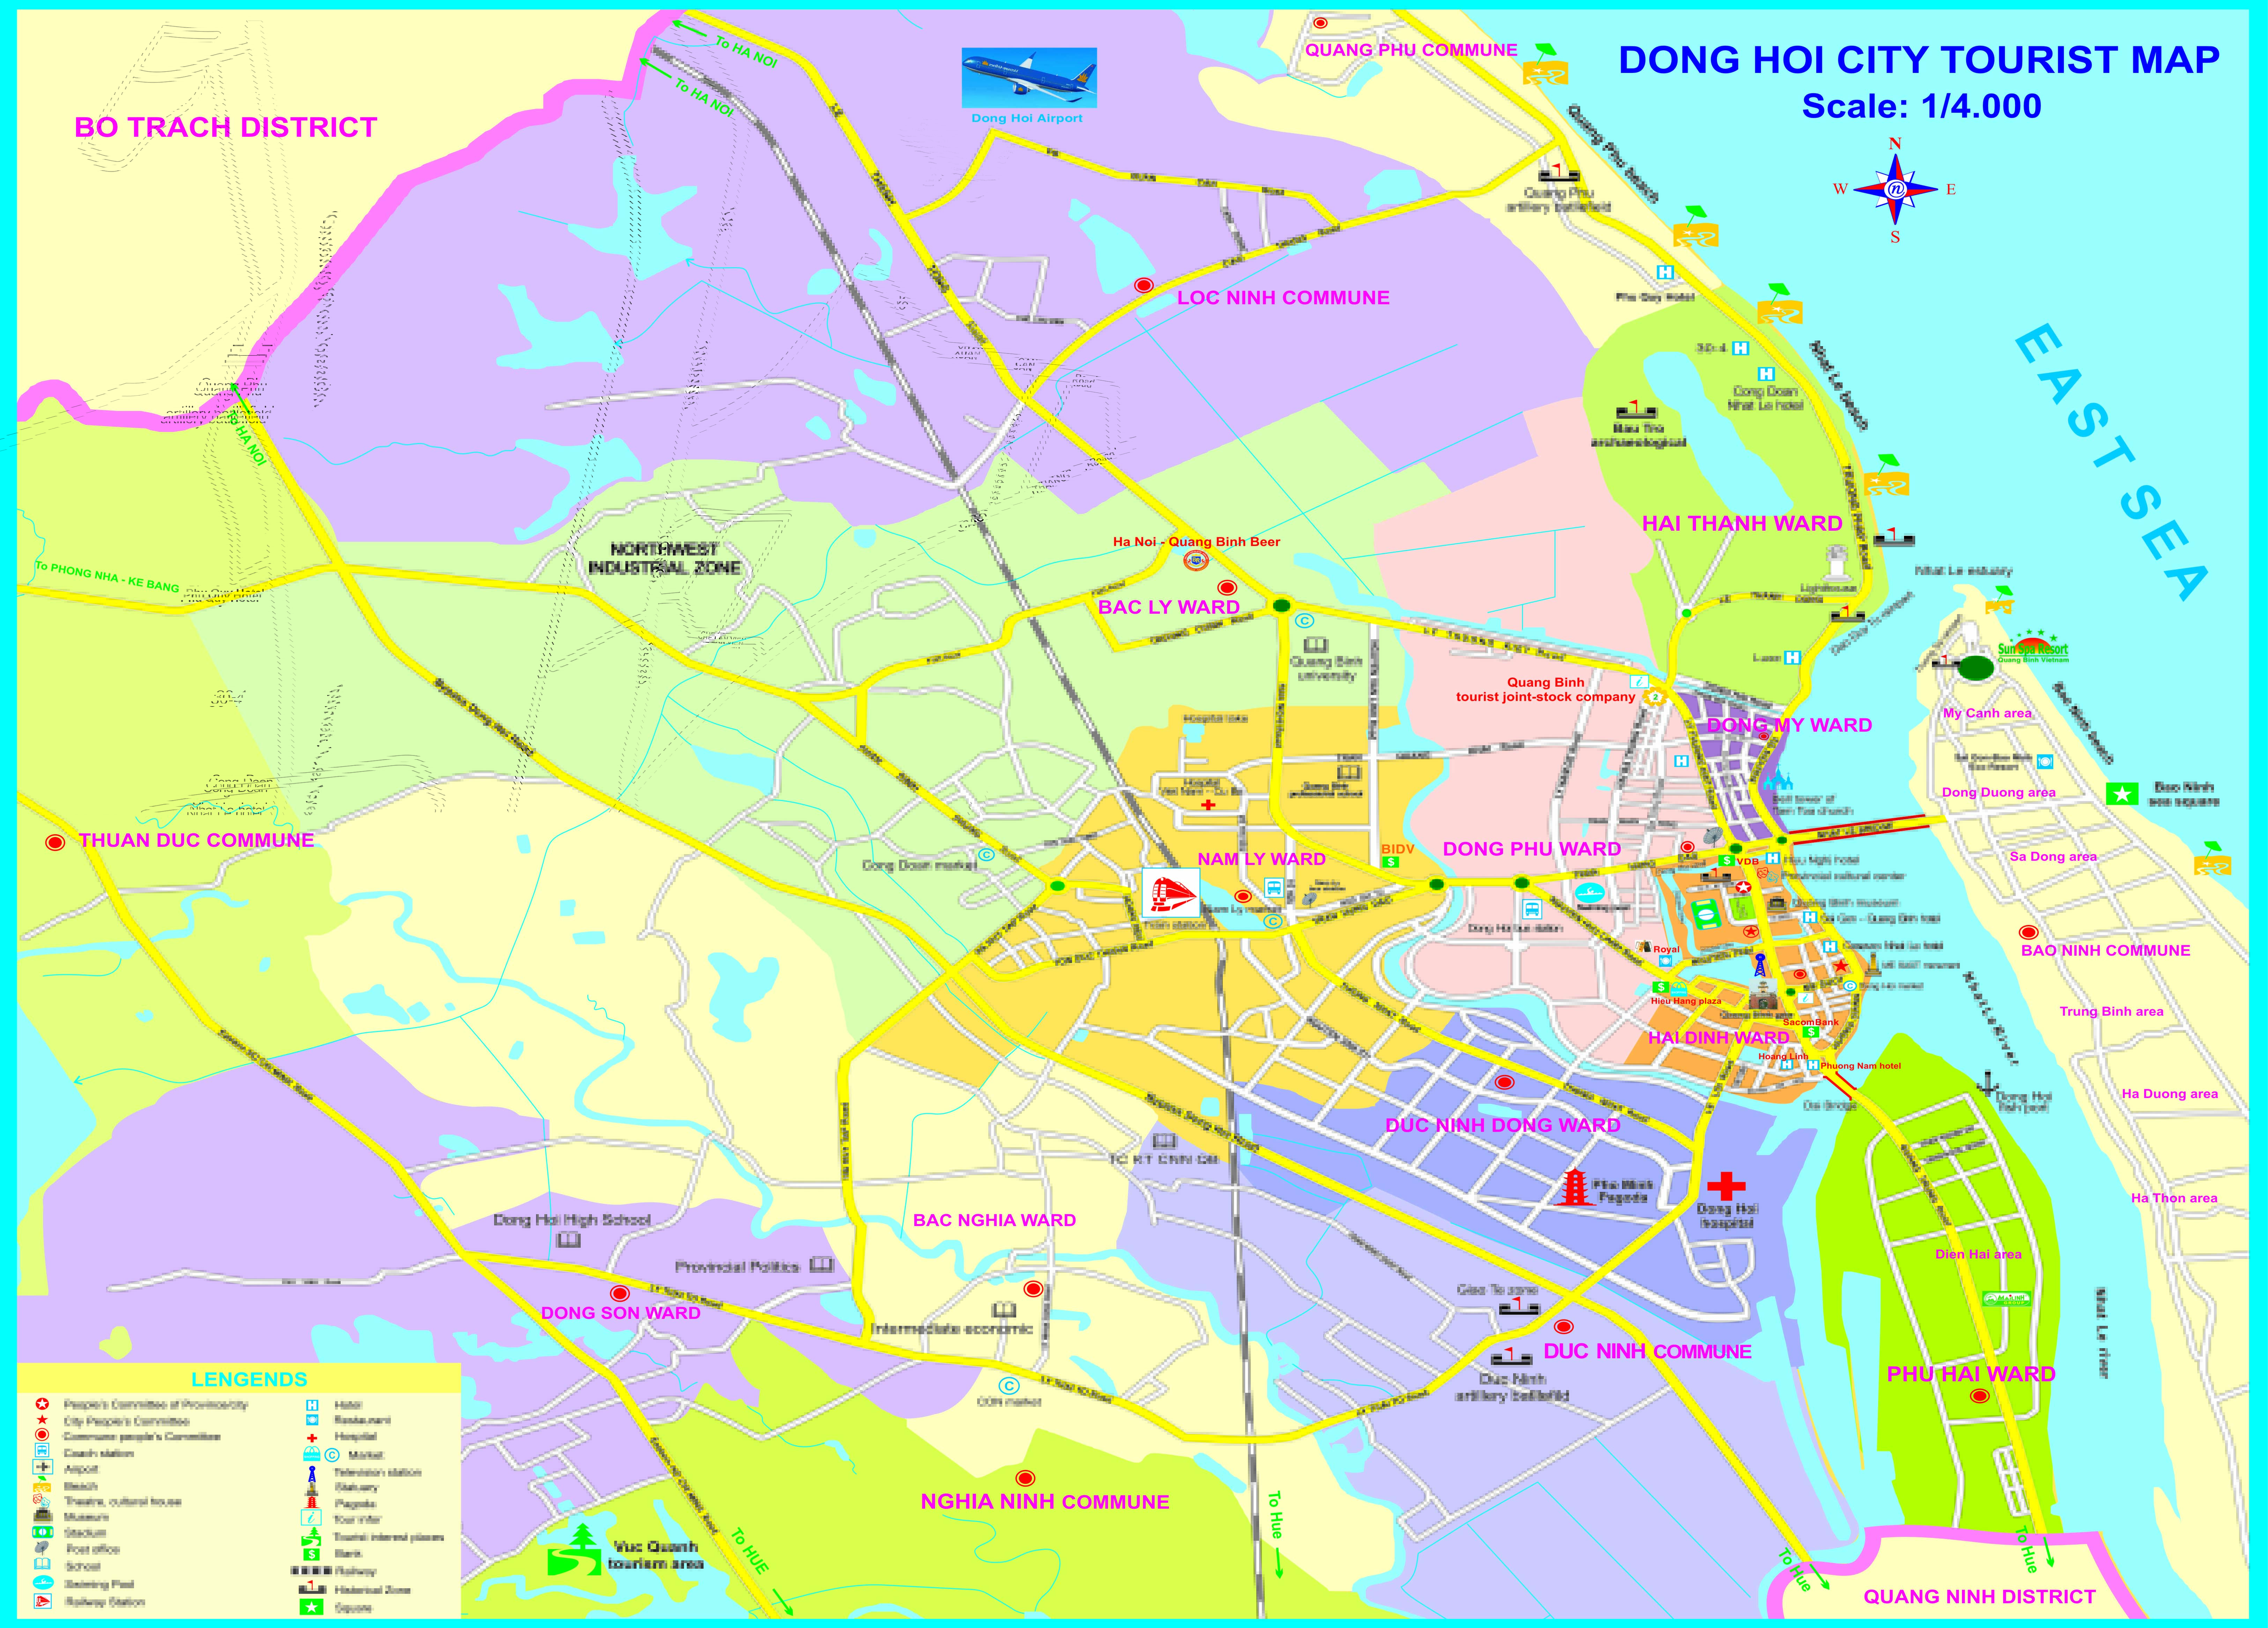 Bản đồ hành chính tỉnh Quảng Bình khổ lớn 2024 kết hợp với bản đồ giao thông tỉnh Quảng Bình mang đến cho người dùng thông tin đầy đủ và chi tiết nhất về địa lý, hành chính và giao thông tại địa phương này. Đây là công cụ hữu ích nhất để tìm hiểu về Quảng Bình trước khi khám phá địa danh hấp dẫn tại đây.